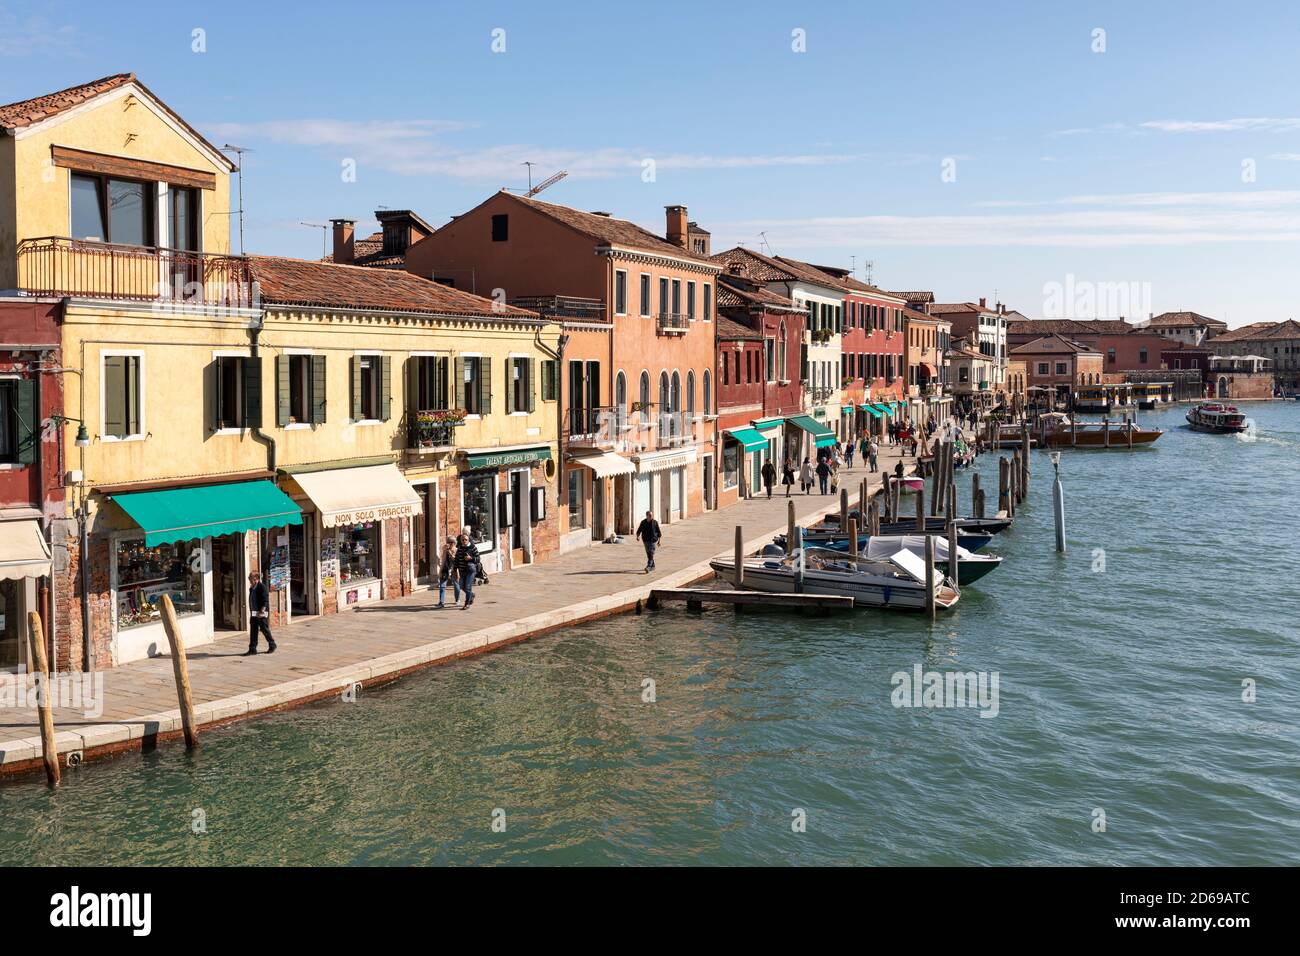 Die venezianische Laguneninsel Murano - der Rio dei Vetrai mit historischen malerischen Gebäuden und Booten. Murano, Venedig, Italien. 2020 Stockfoto